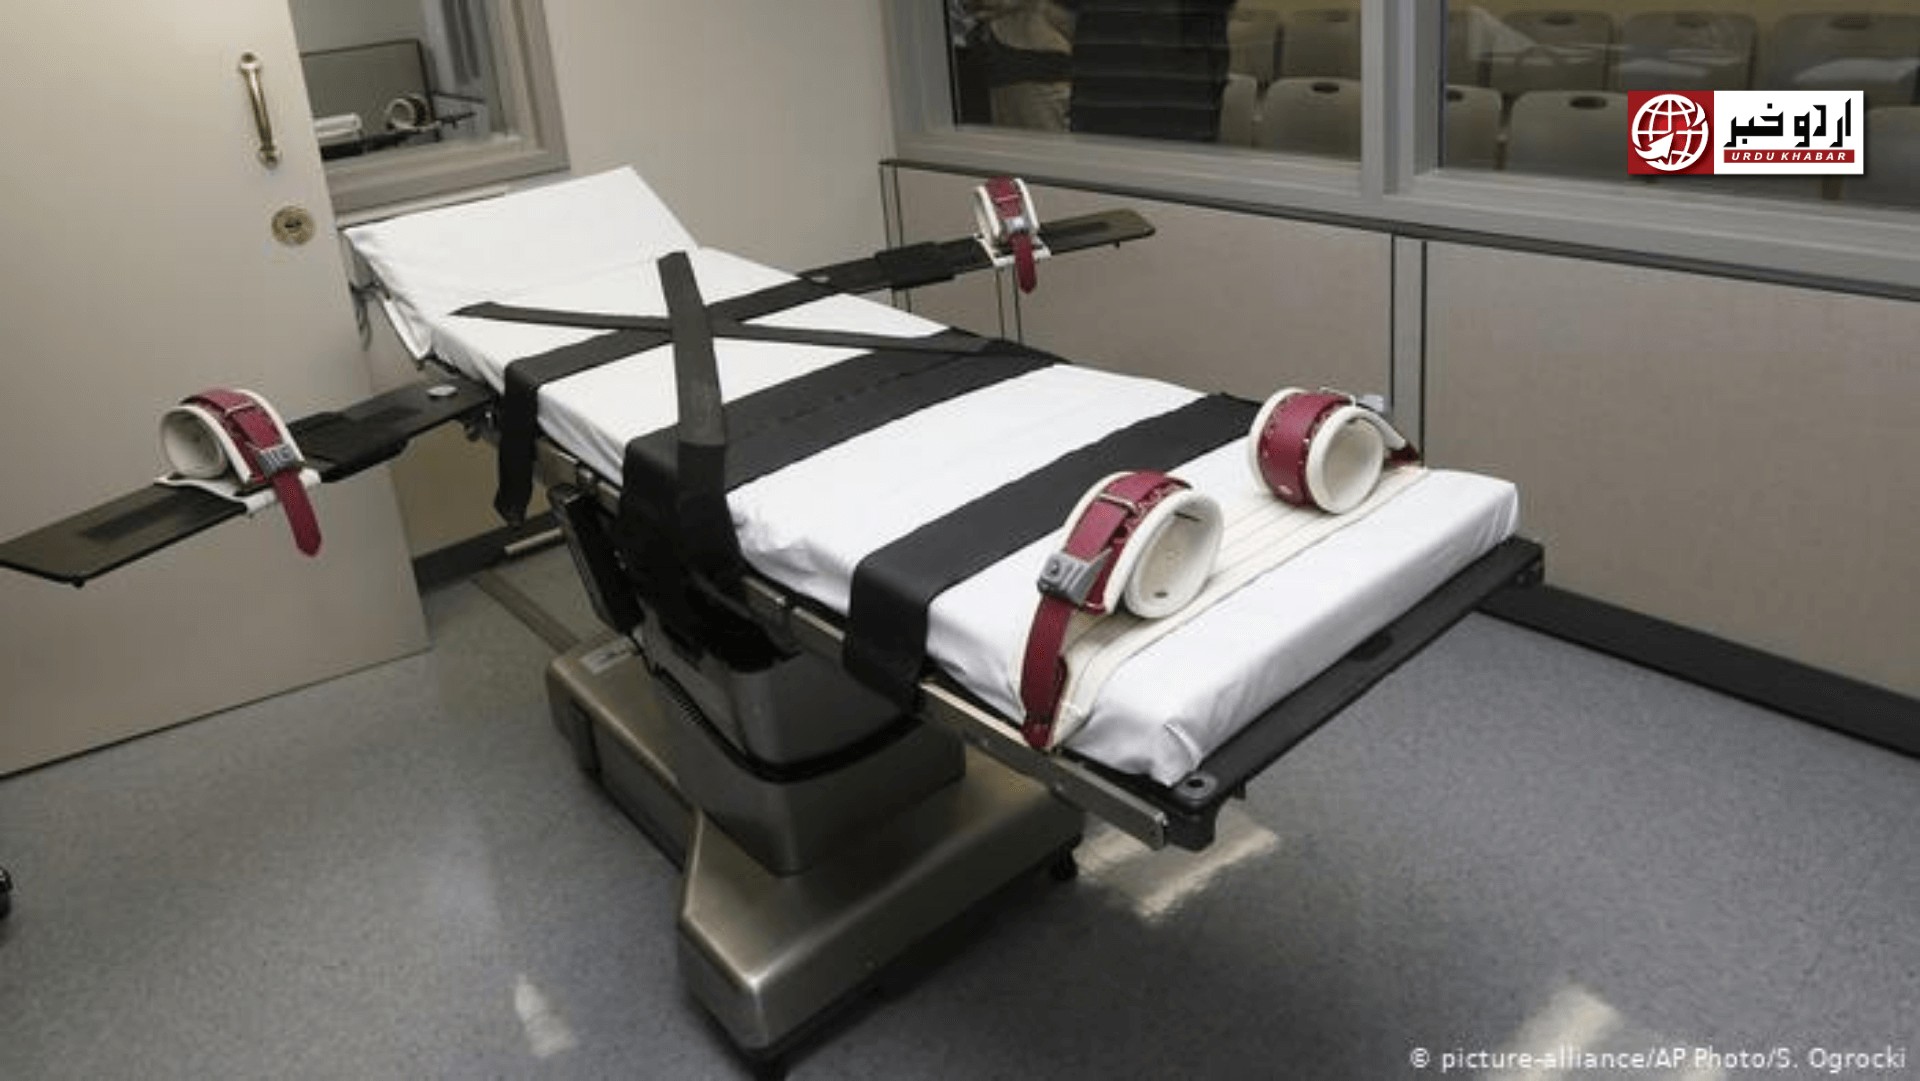 امریکہ میں 17 سال بعد وفاقی حکومت کی جانب سے قتل کے مجرم کو سزائے موت